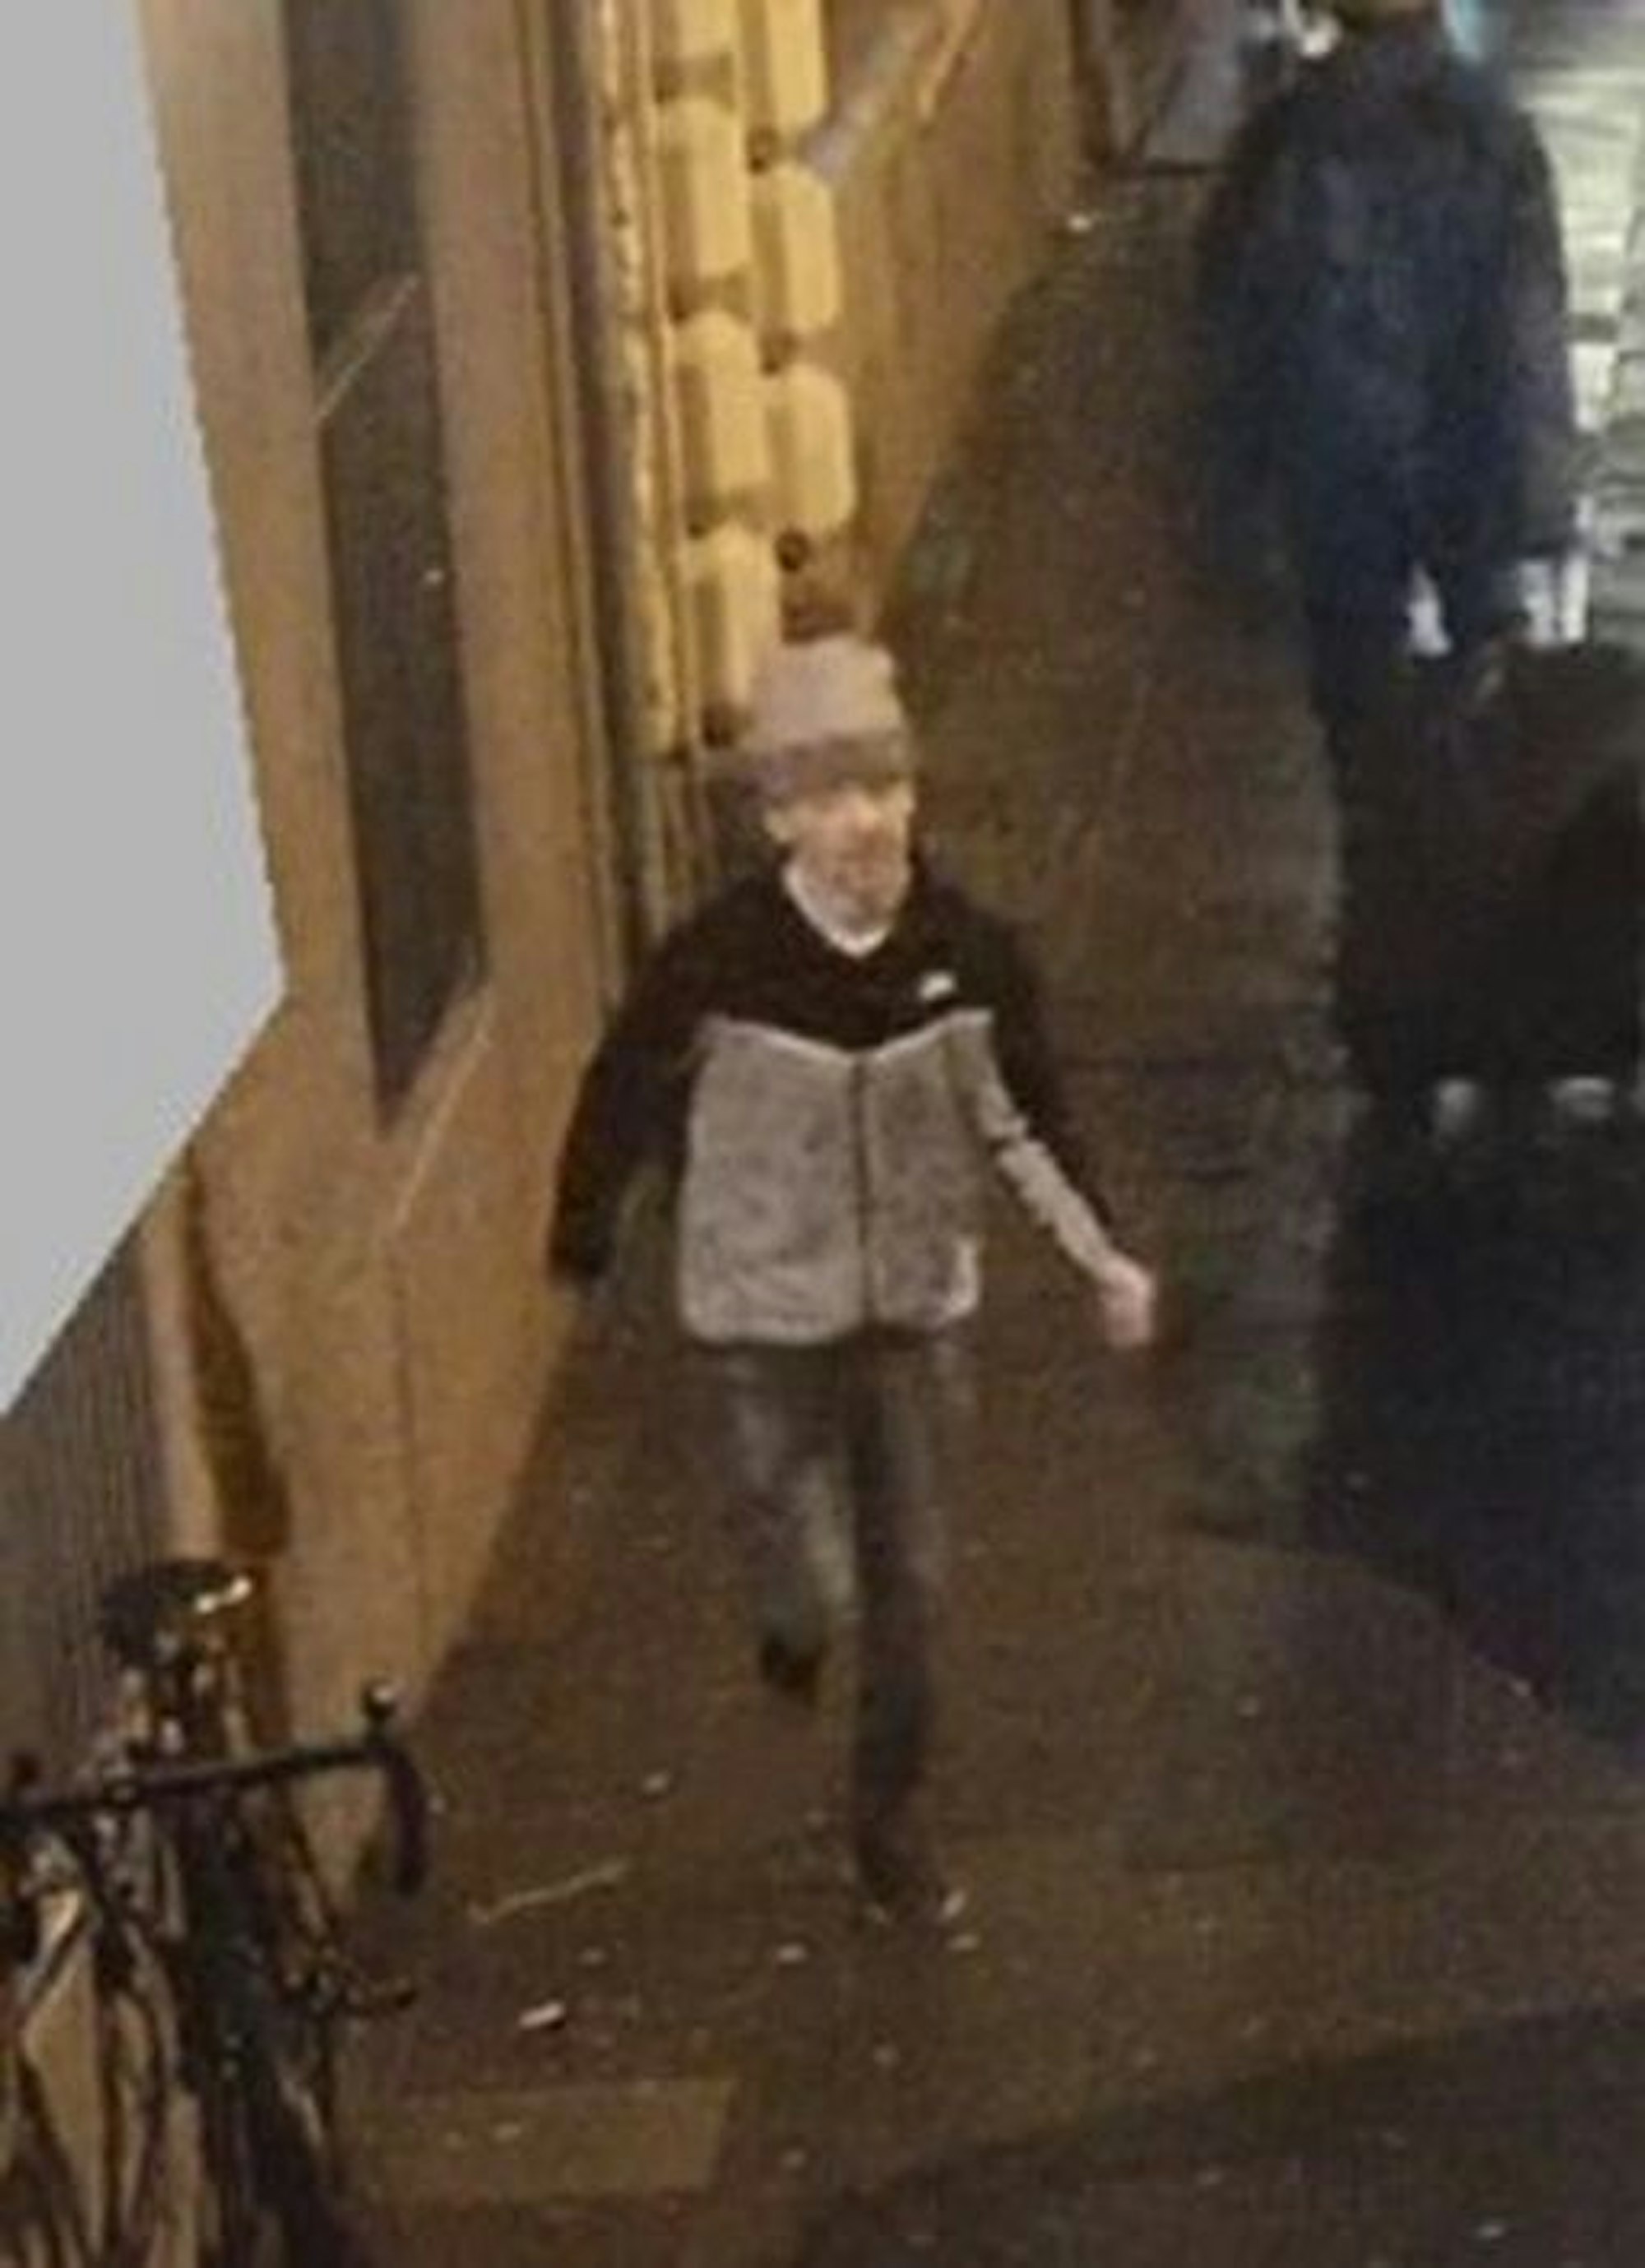 Mann in grauer Jacke auf einem Fahndungsbild. Er läuft durch eine Straße.